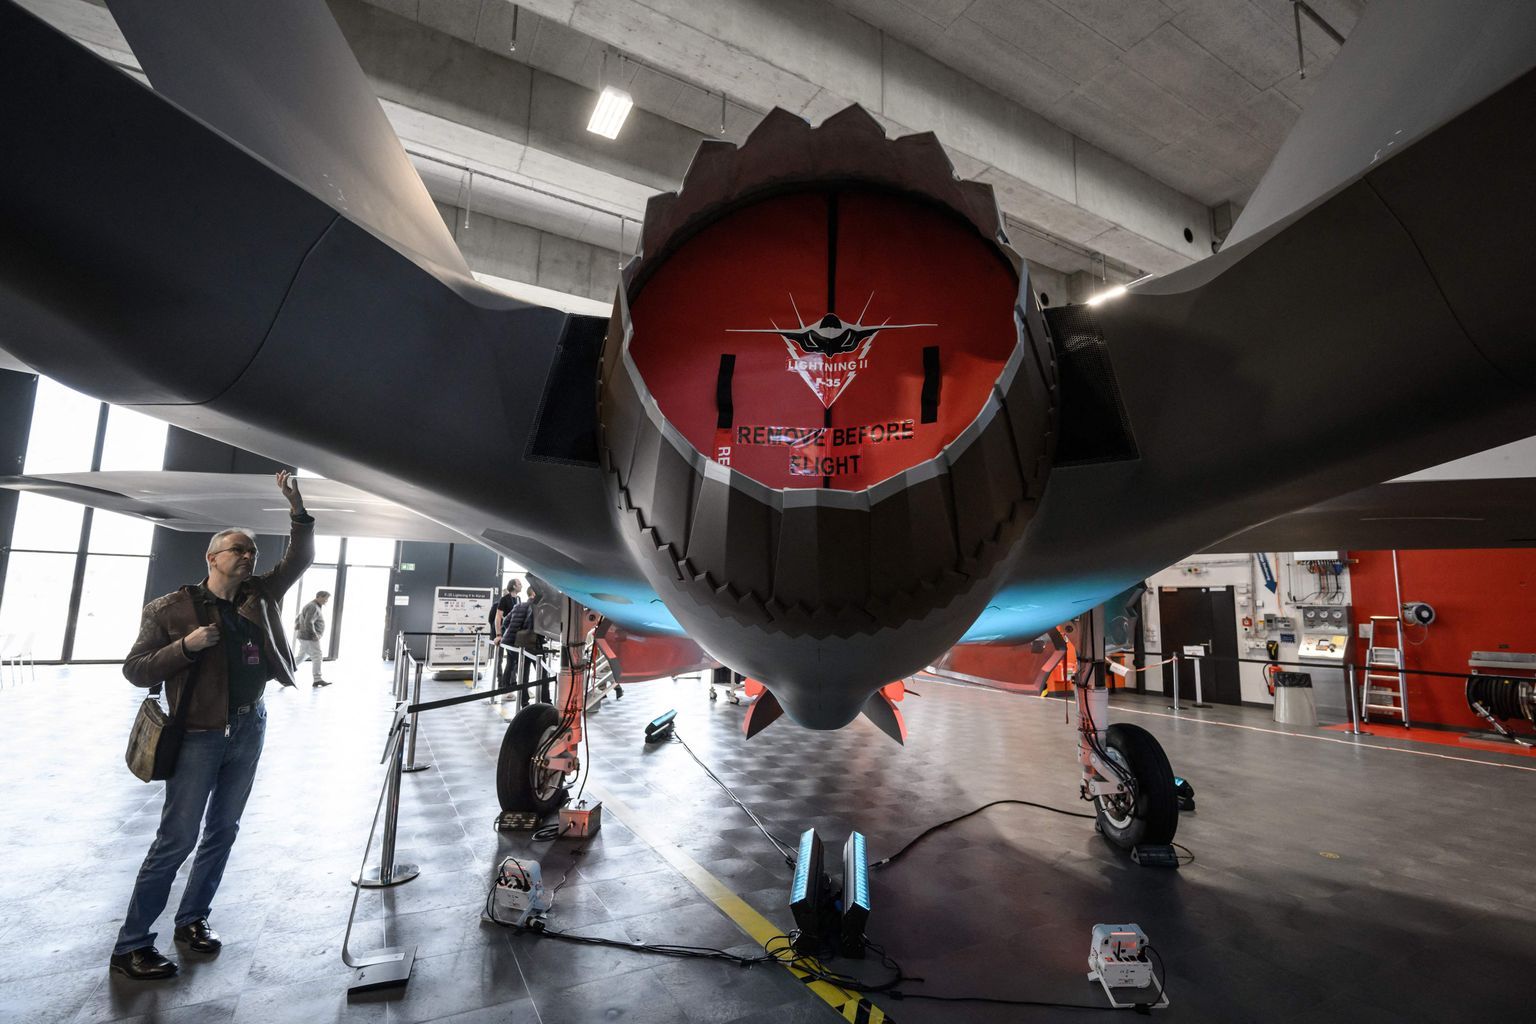 Ajakirjanik 24. märtsil 2022 Šveitsi Emmeni lennubaasis Lockheed Martini hävituslennuki F-35 A Lightning II mudelit uurimas.